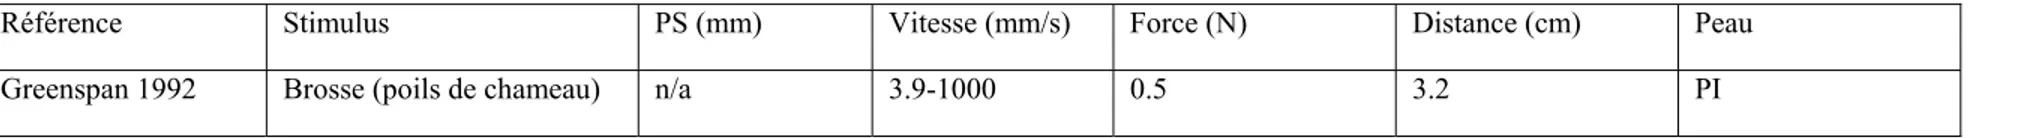 Tableau 4 :  Caractéristiques des stimuli utilisés dans les expériences d’électrophysiologie de la vitesse 